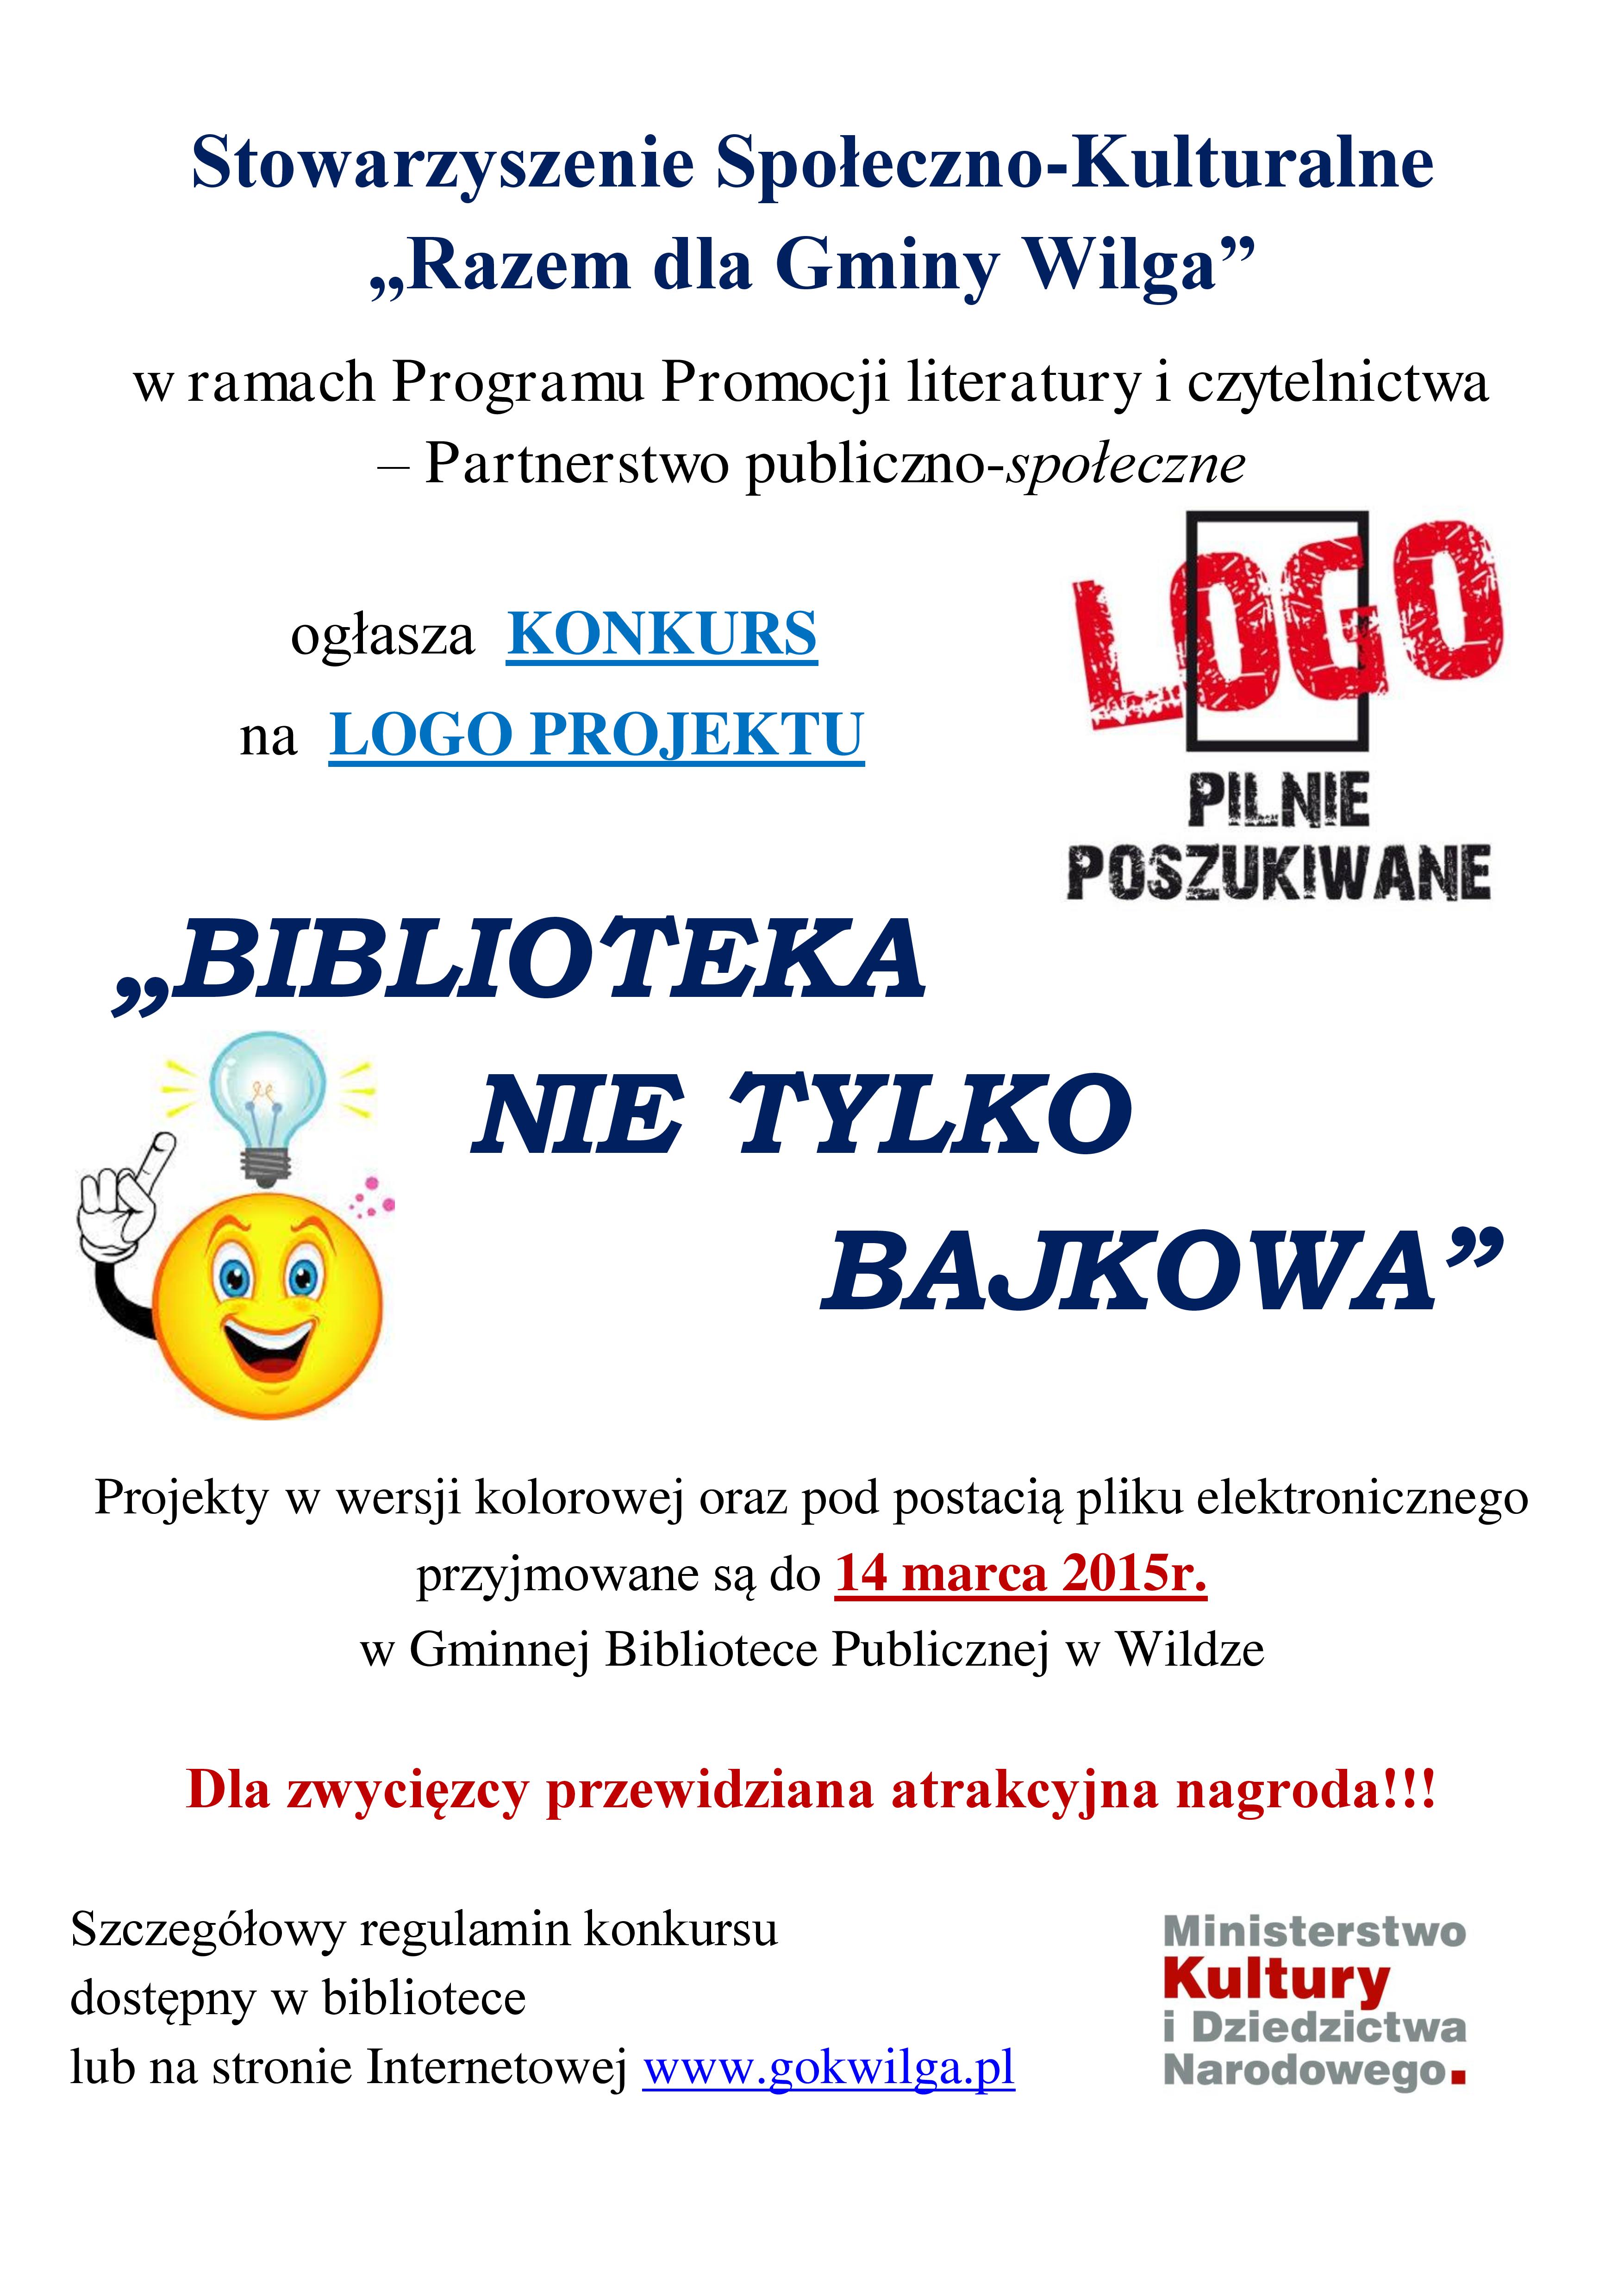 Konkursnalogo-plakatbibliotekanietylkobajkowa-page-001